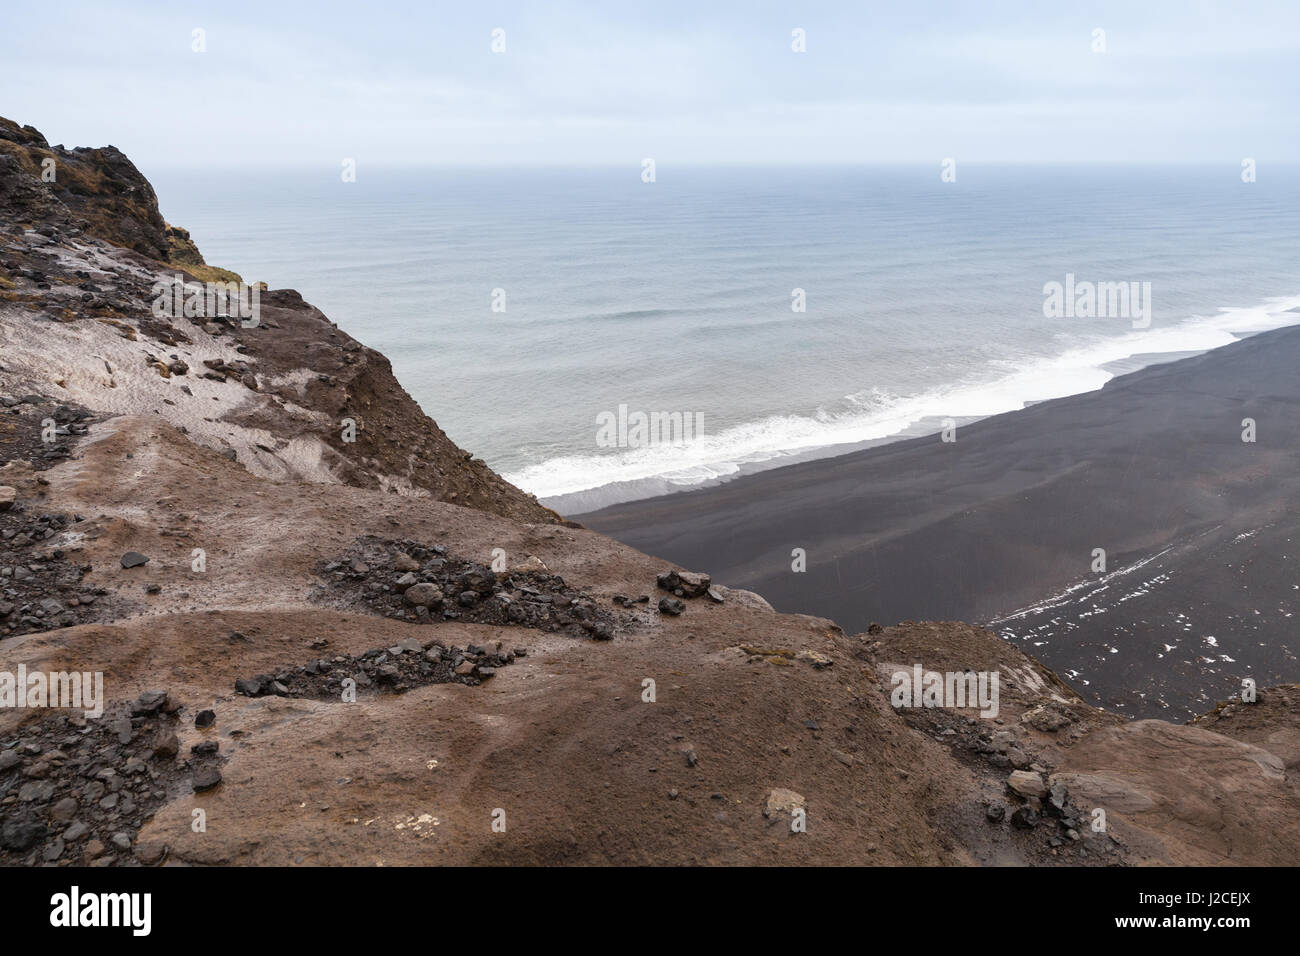 Plage de sable noir, la côte de l'océan Atlantique Nord. Vik, Islande Banque D'Images